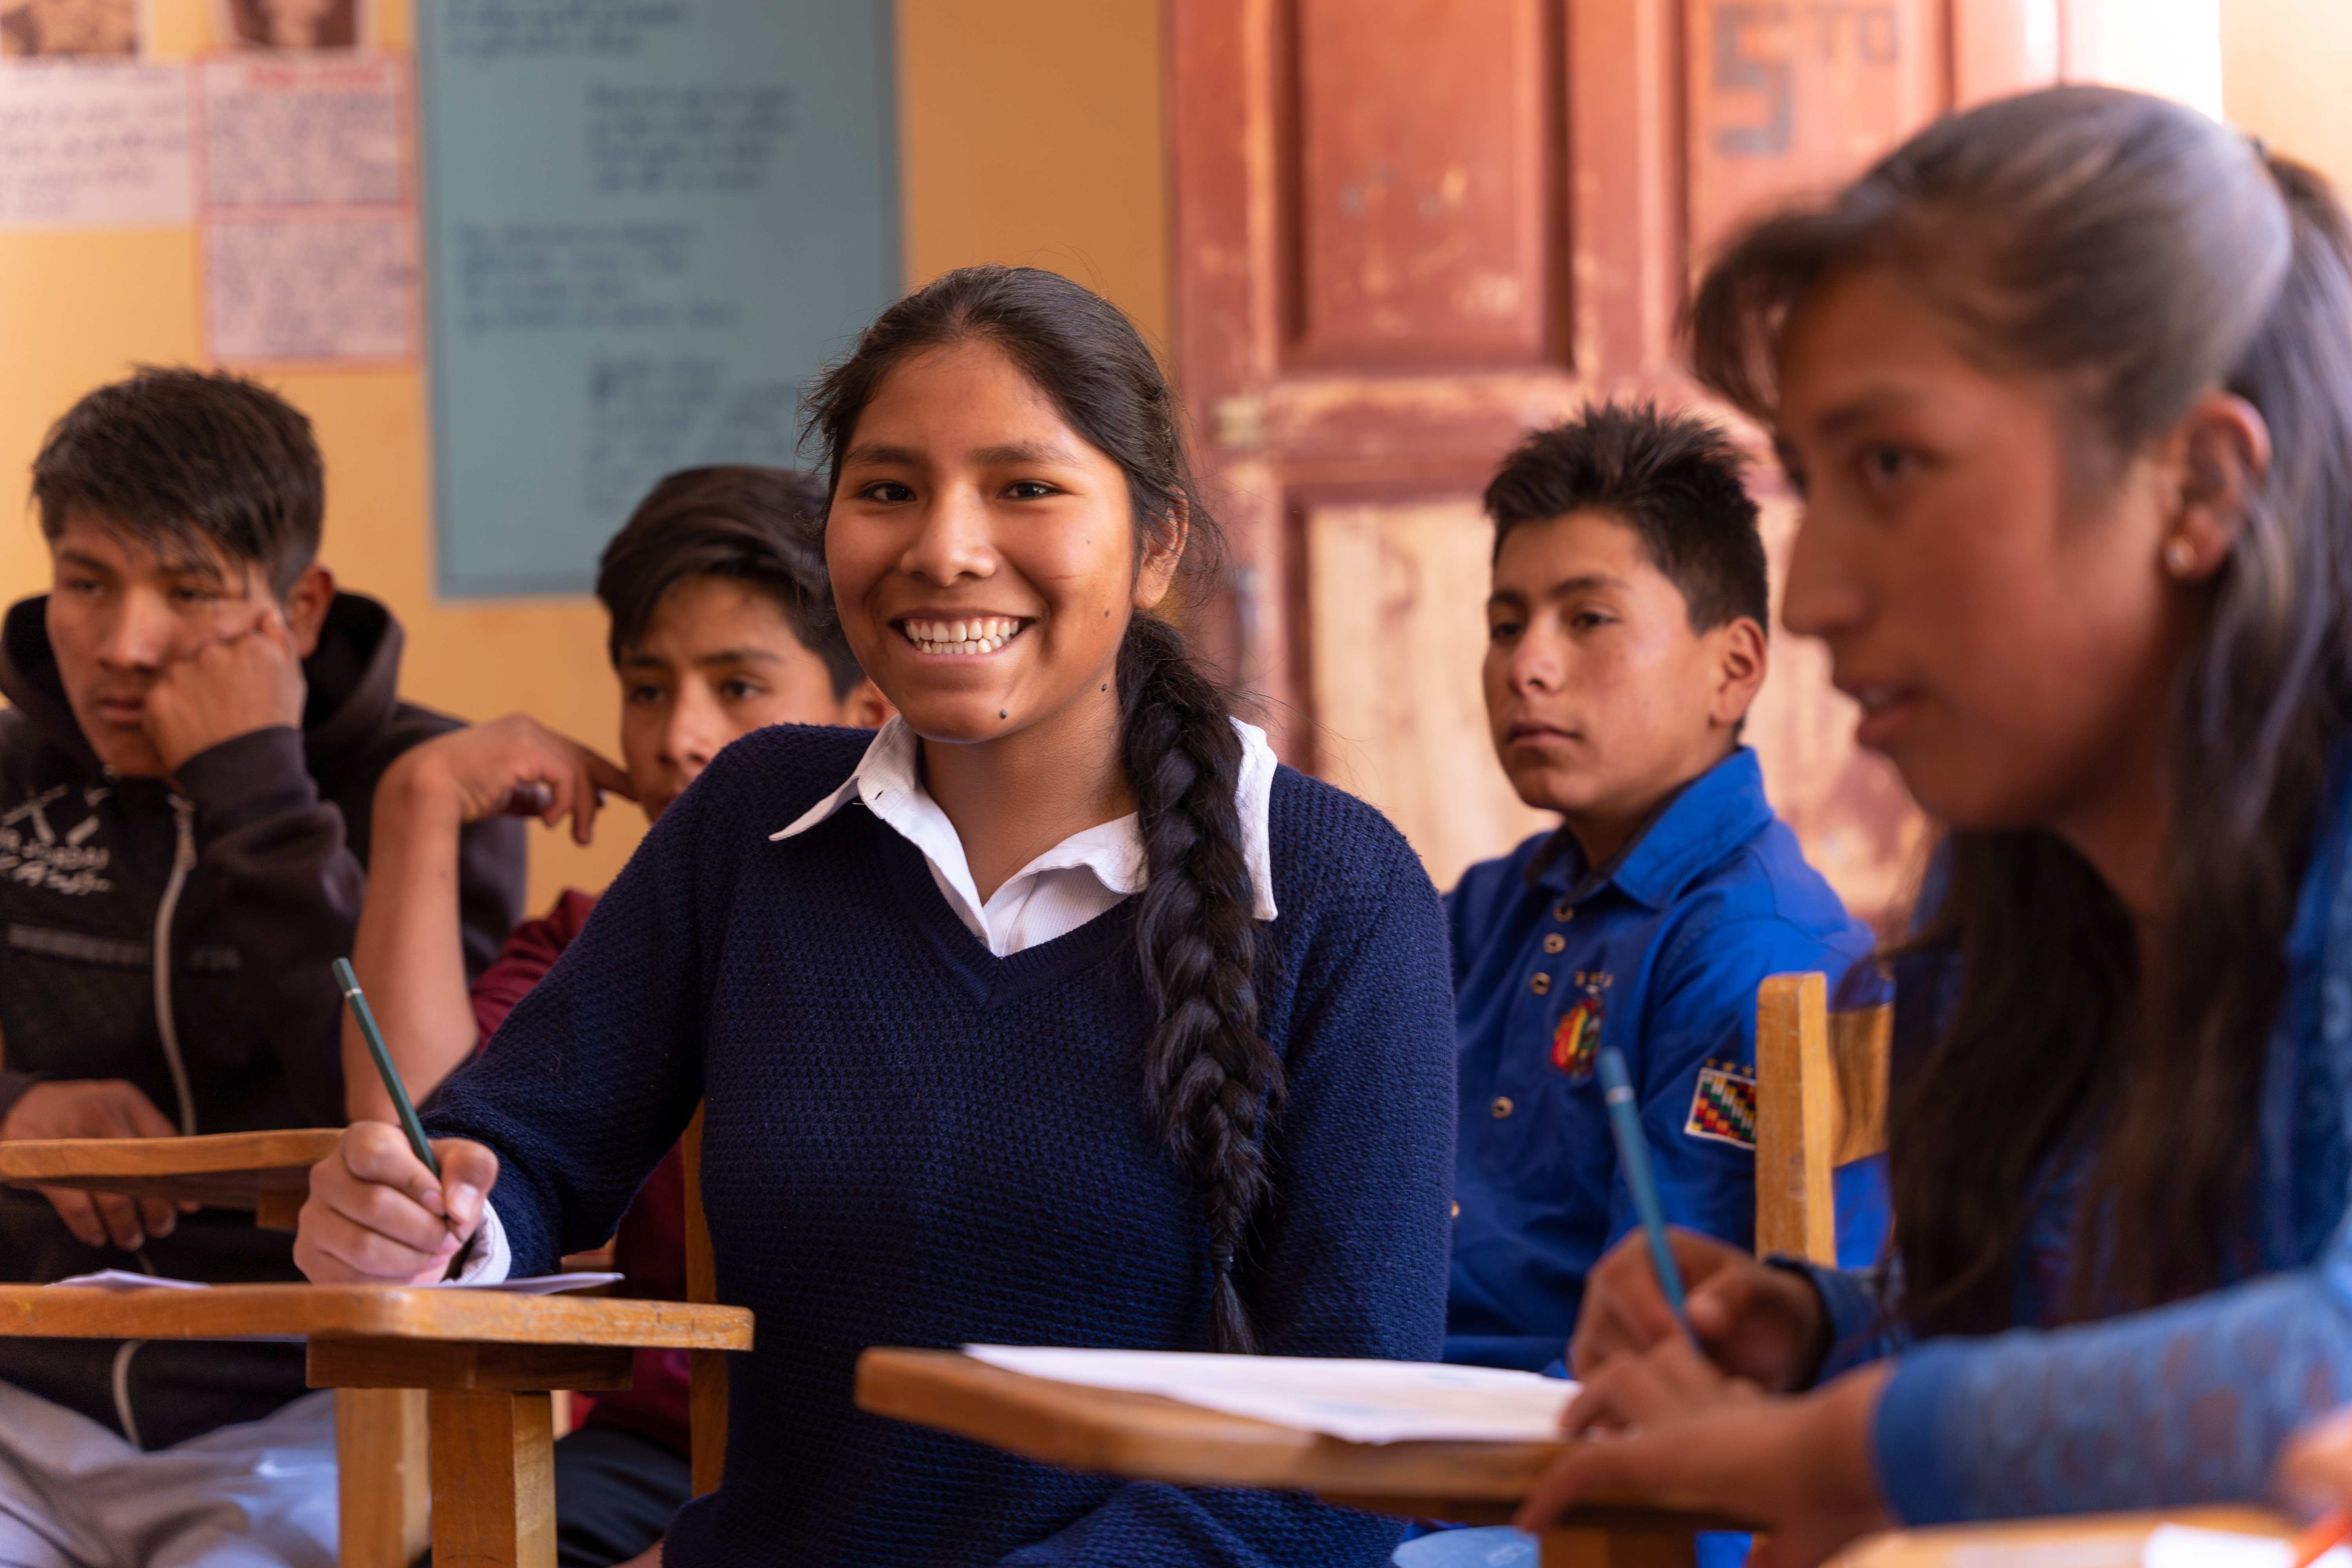 Jugendliche aus Bolivien sitzen in der Schule. (Quelle: Christian Nusch)